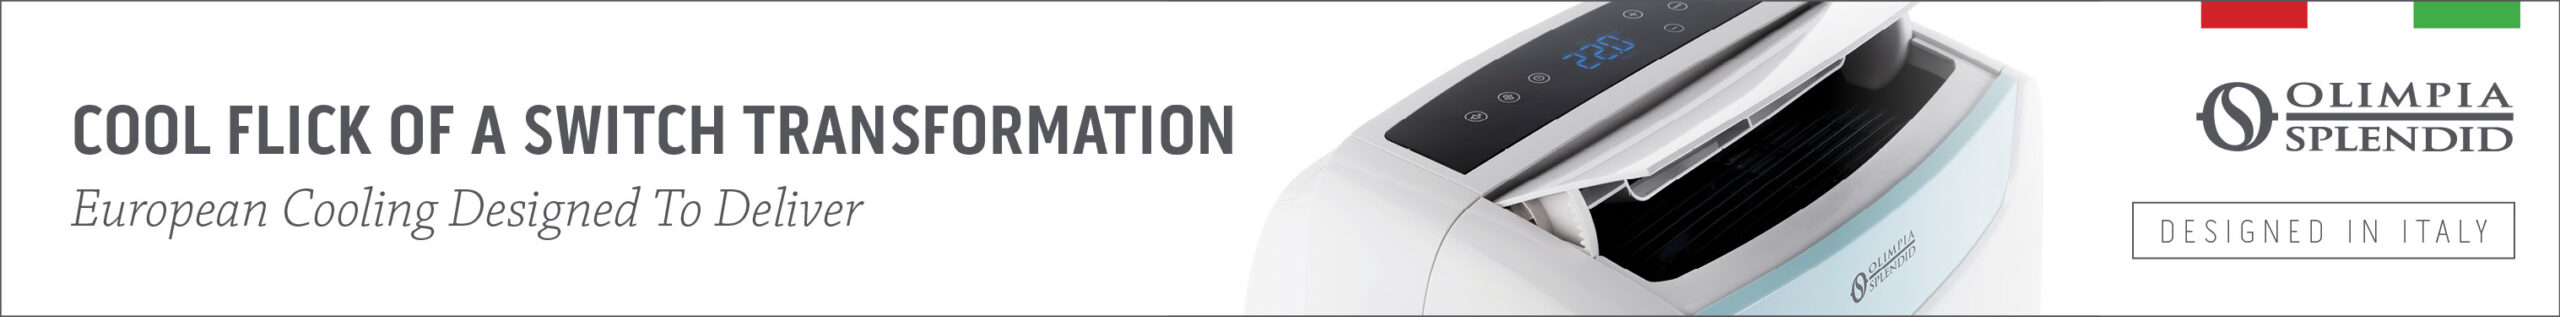 Olimpia Splendid Unico Cooling 728x90 1 scaled Kalium Bluetooth Speaker Gives New Shape To Wireless Sound